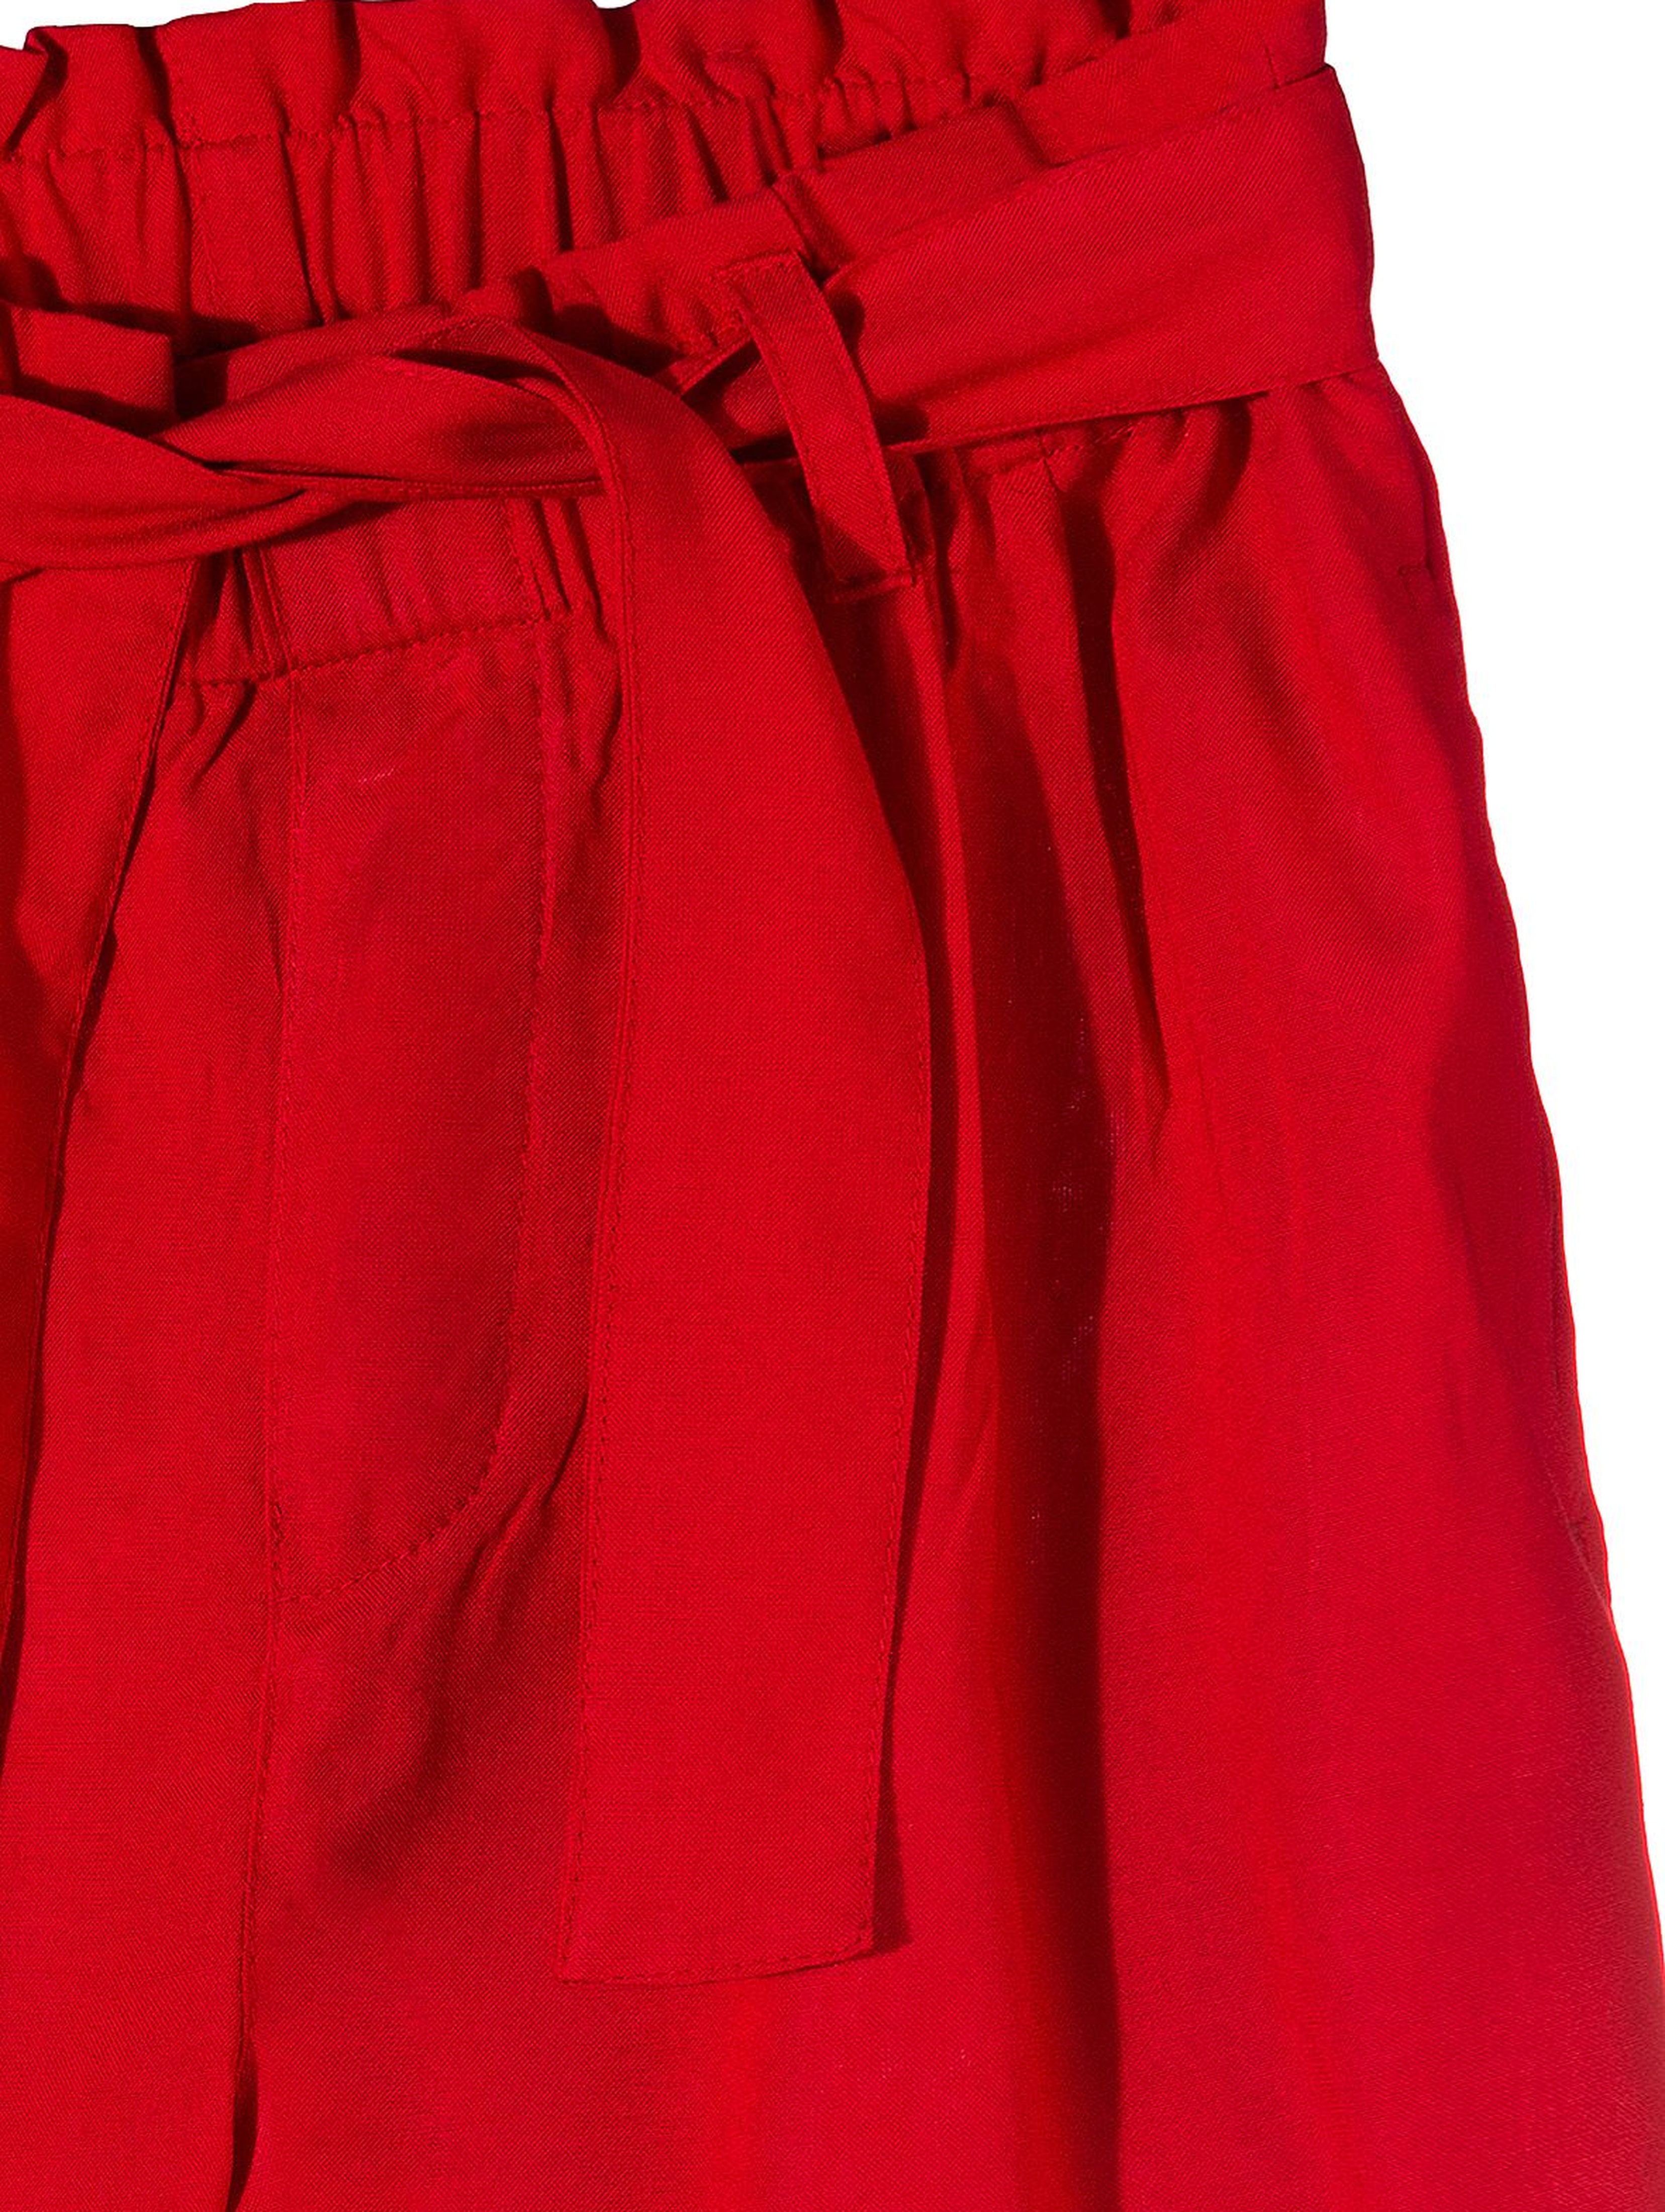 Spodnie dziewczęce w czerwonym kolorze